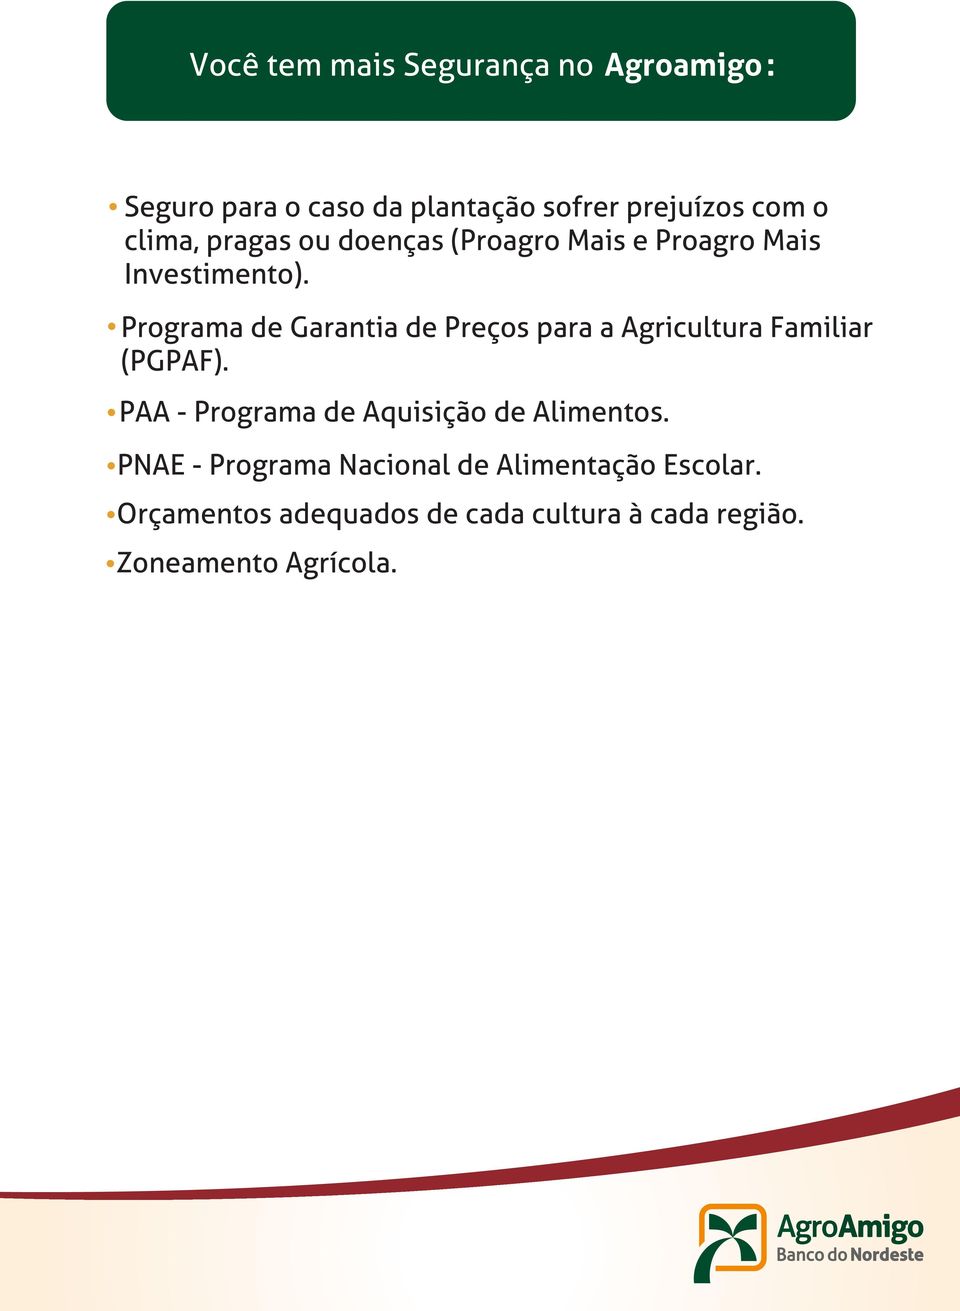 Programa de Garantia de Preços para a Agricultura Familiar (PGPAF).